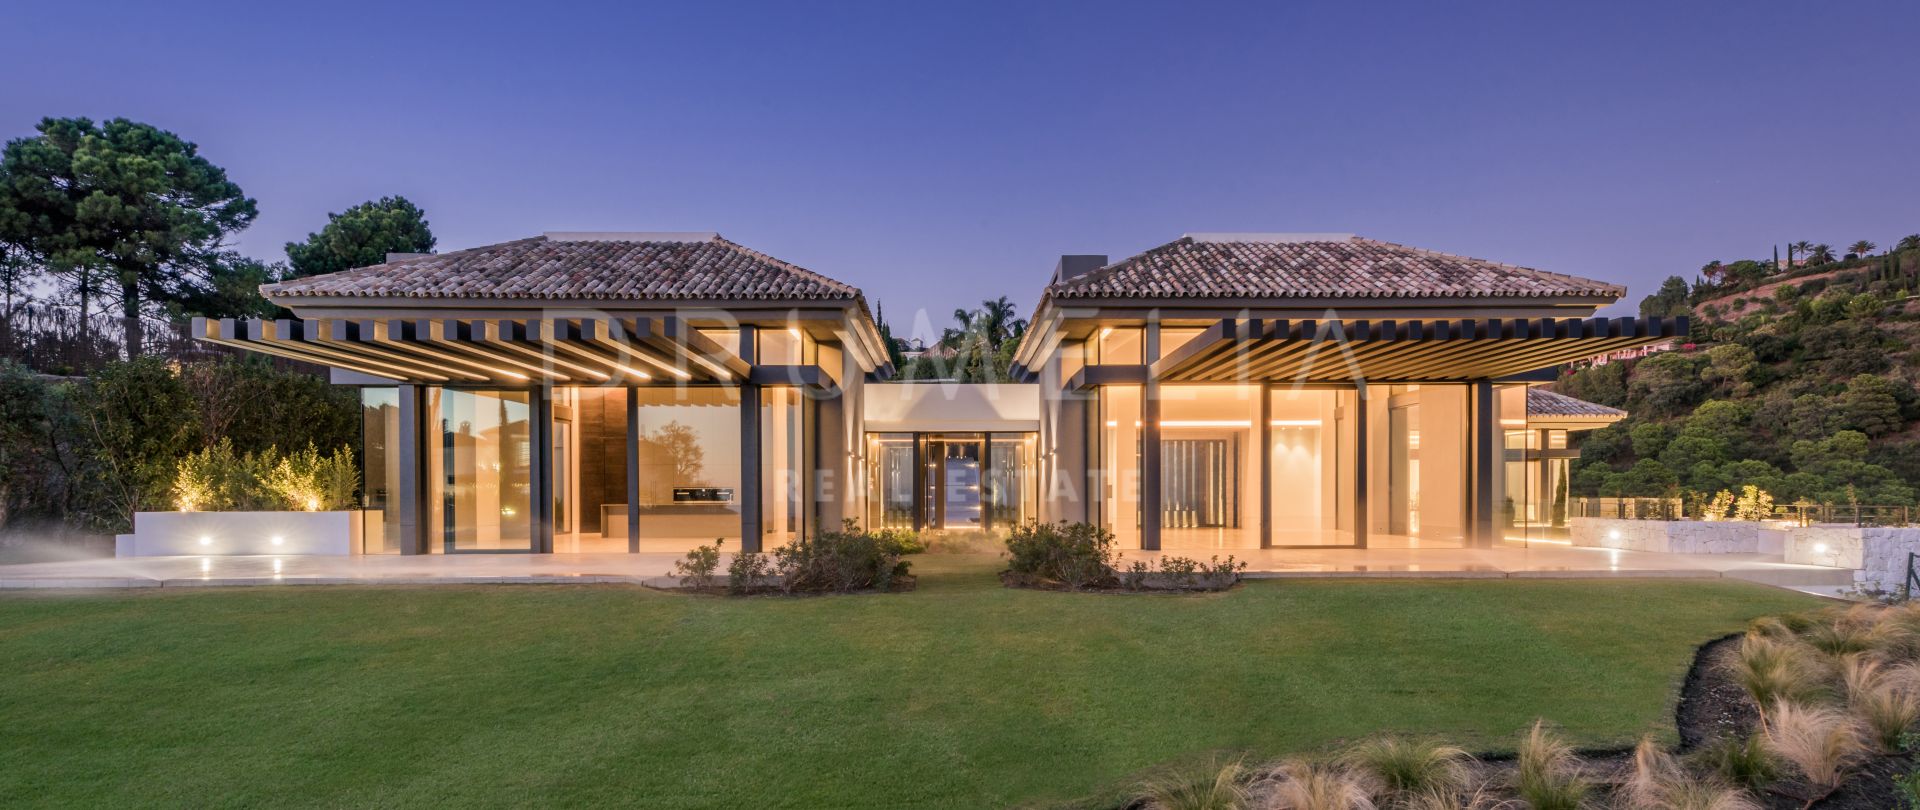 El Cipres - Uitzonderlijke nieuwe moderne/eigentijdse villa, La Zagaleta, Benahavis